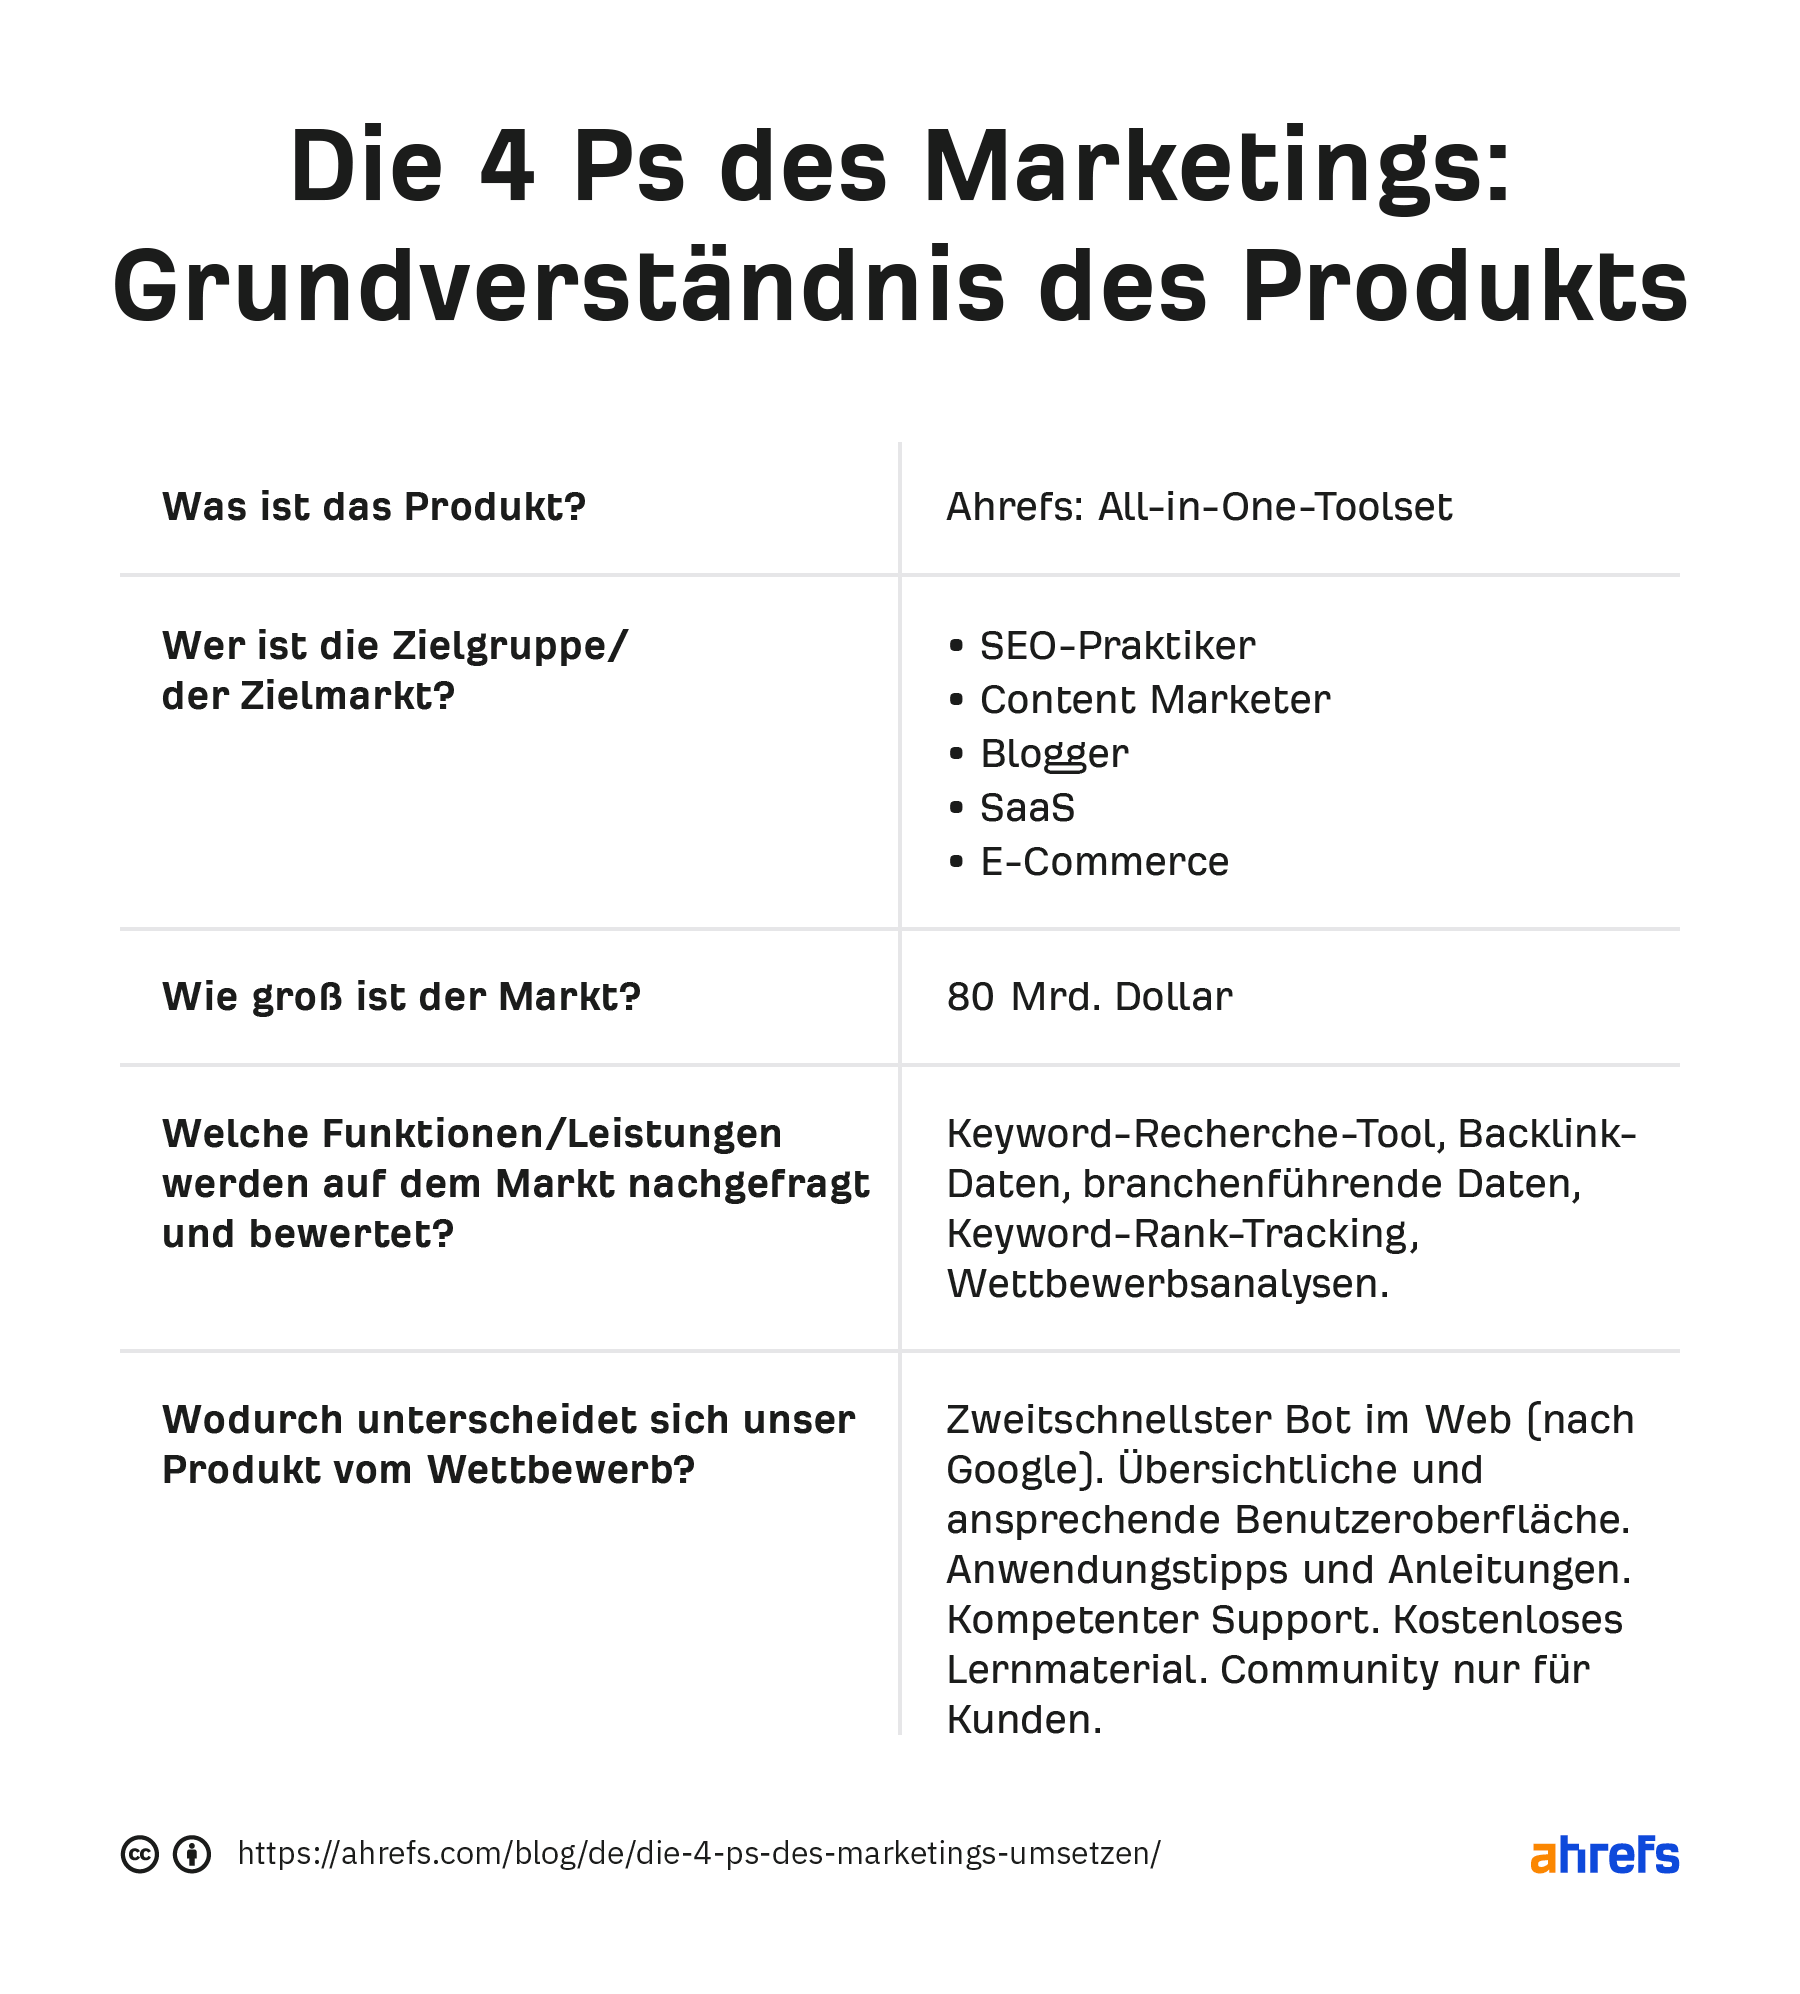 Die 4P des Marketings: Produkt-Grundlagen. Tabelle mit Fragen auf der linken Seite und entsprechenden Antworten auf der rechten Seite 